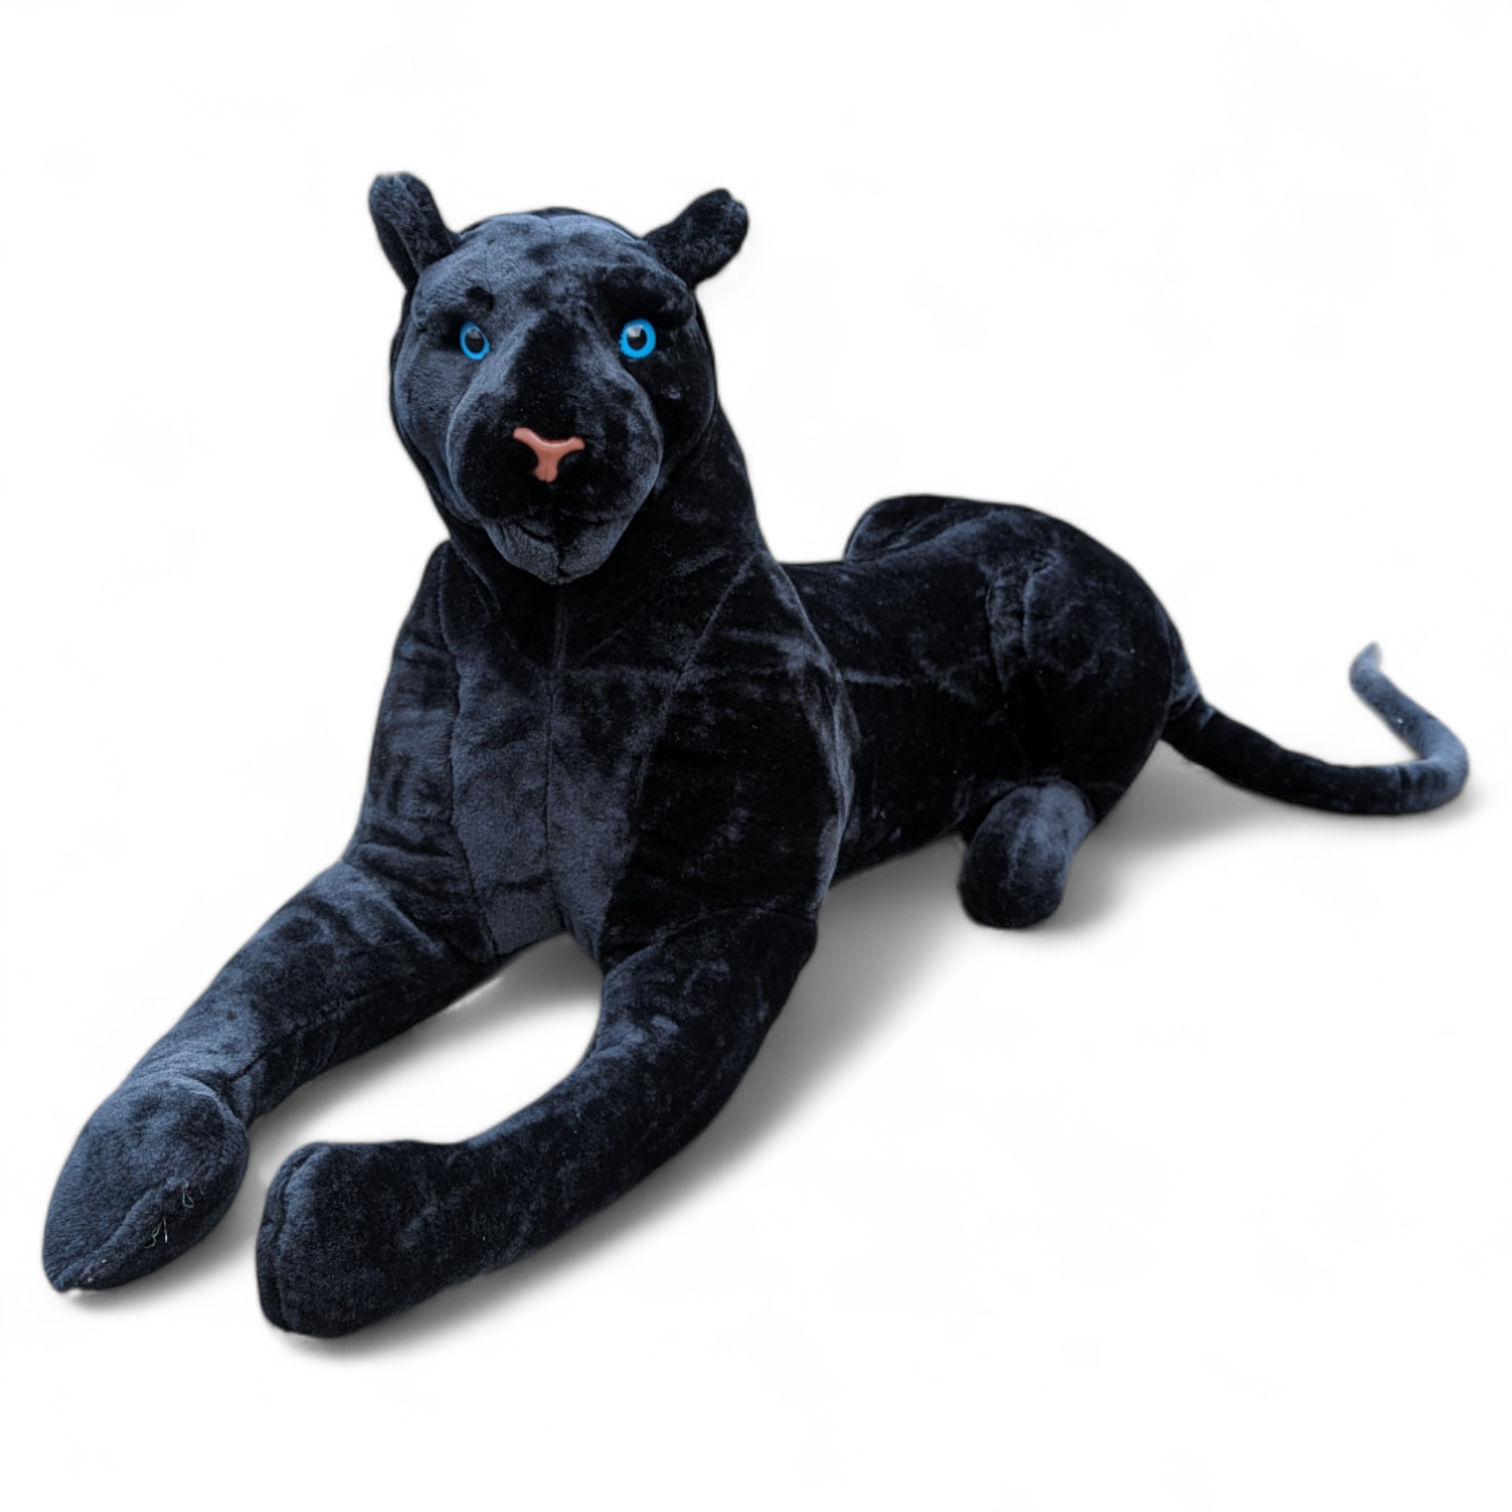 Wildlfie panther – 46″